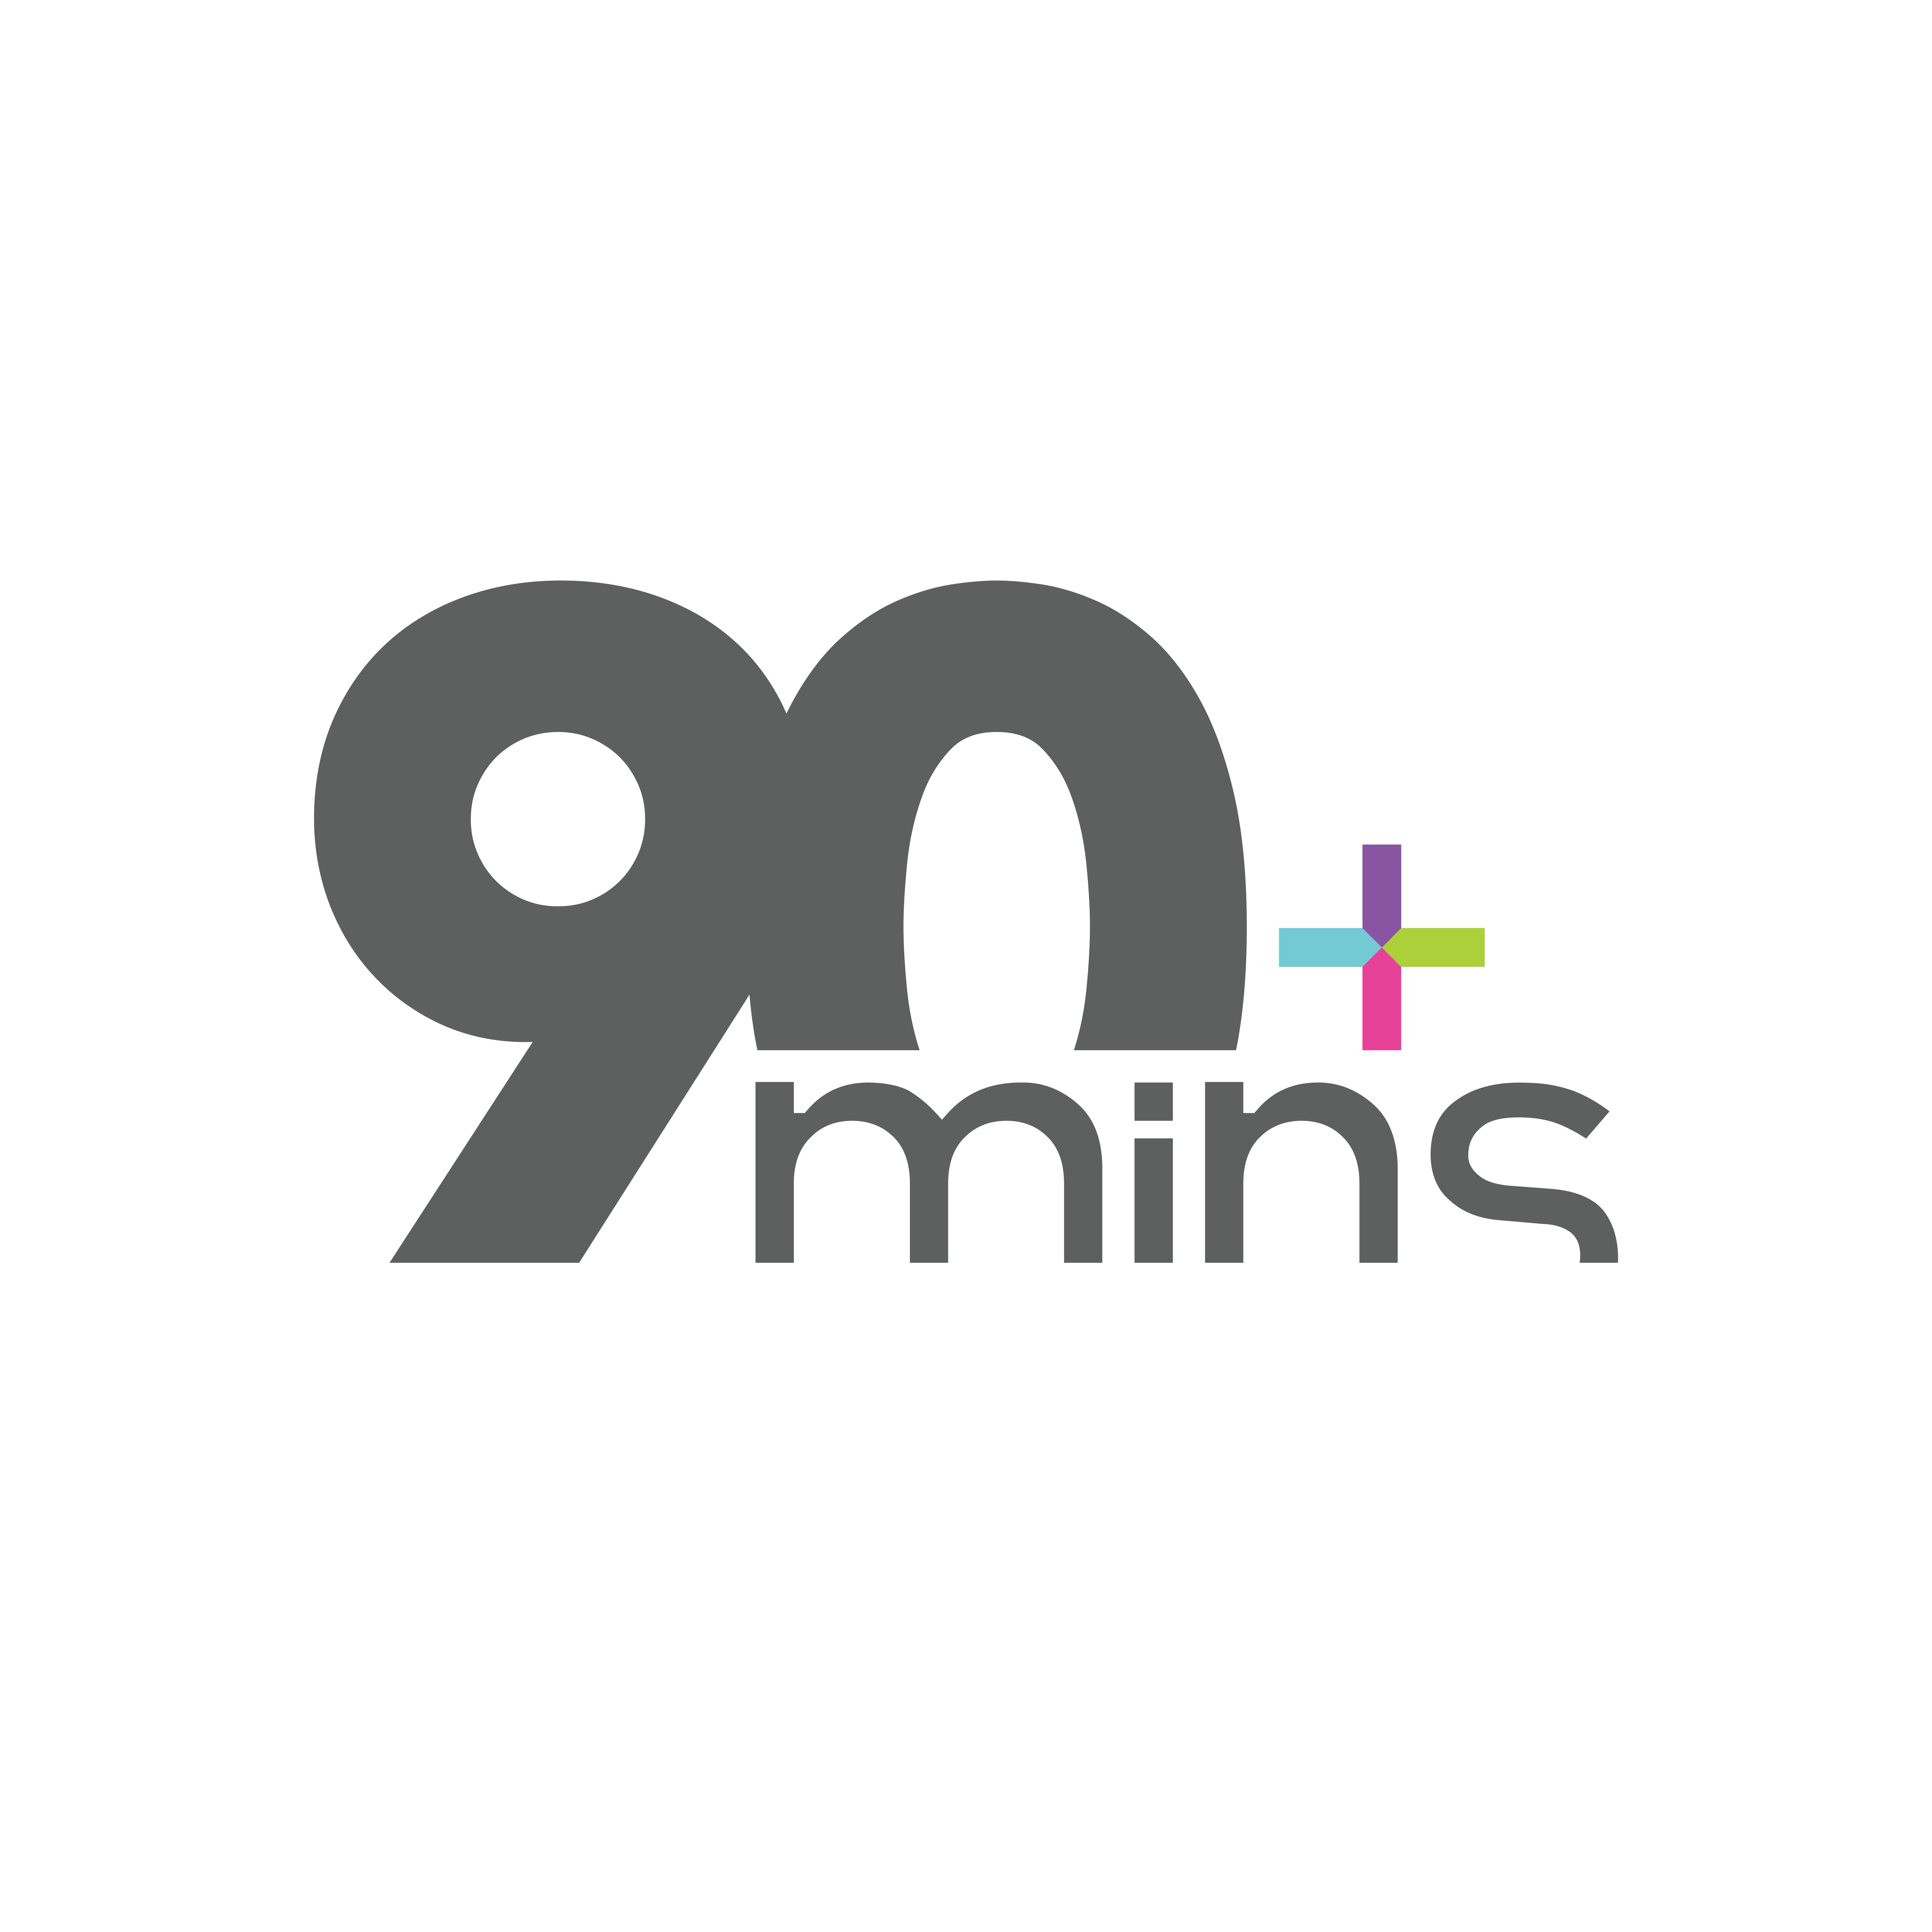 90mins logo